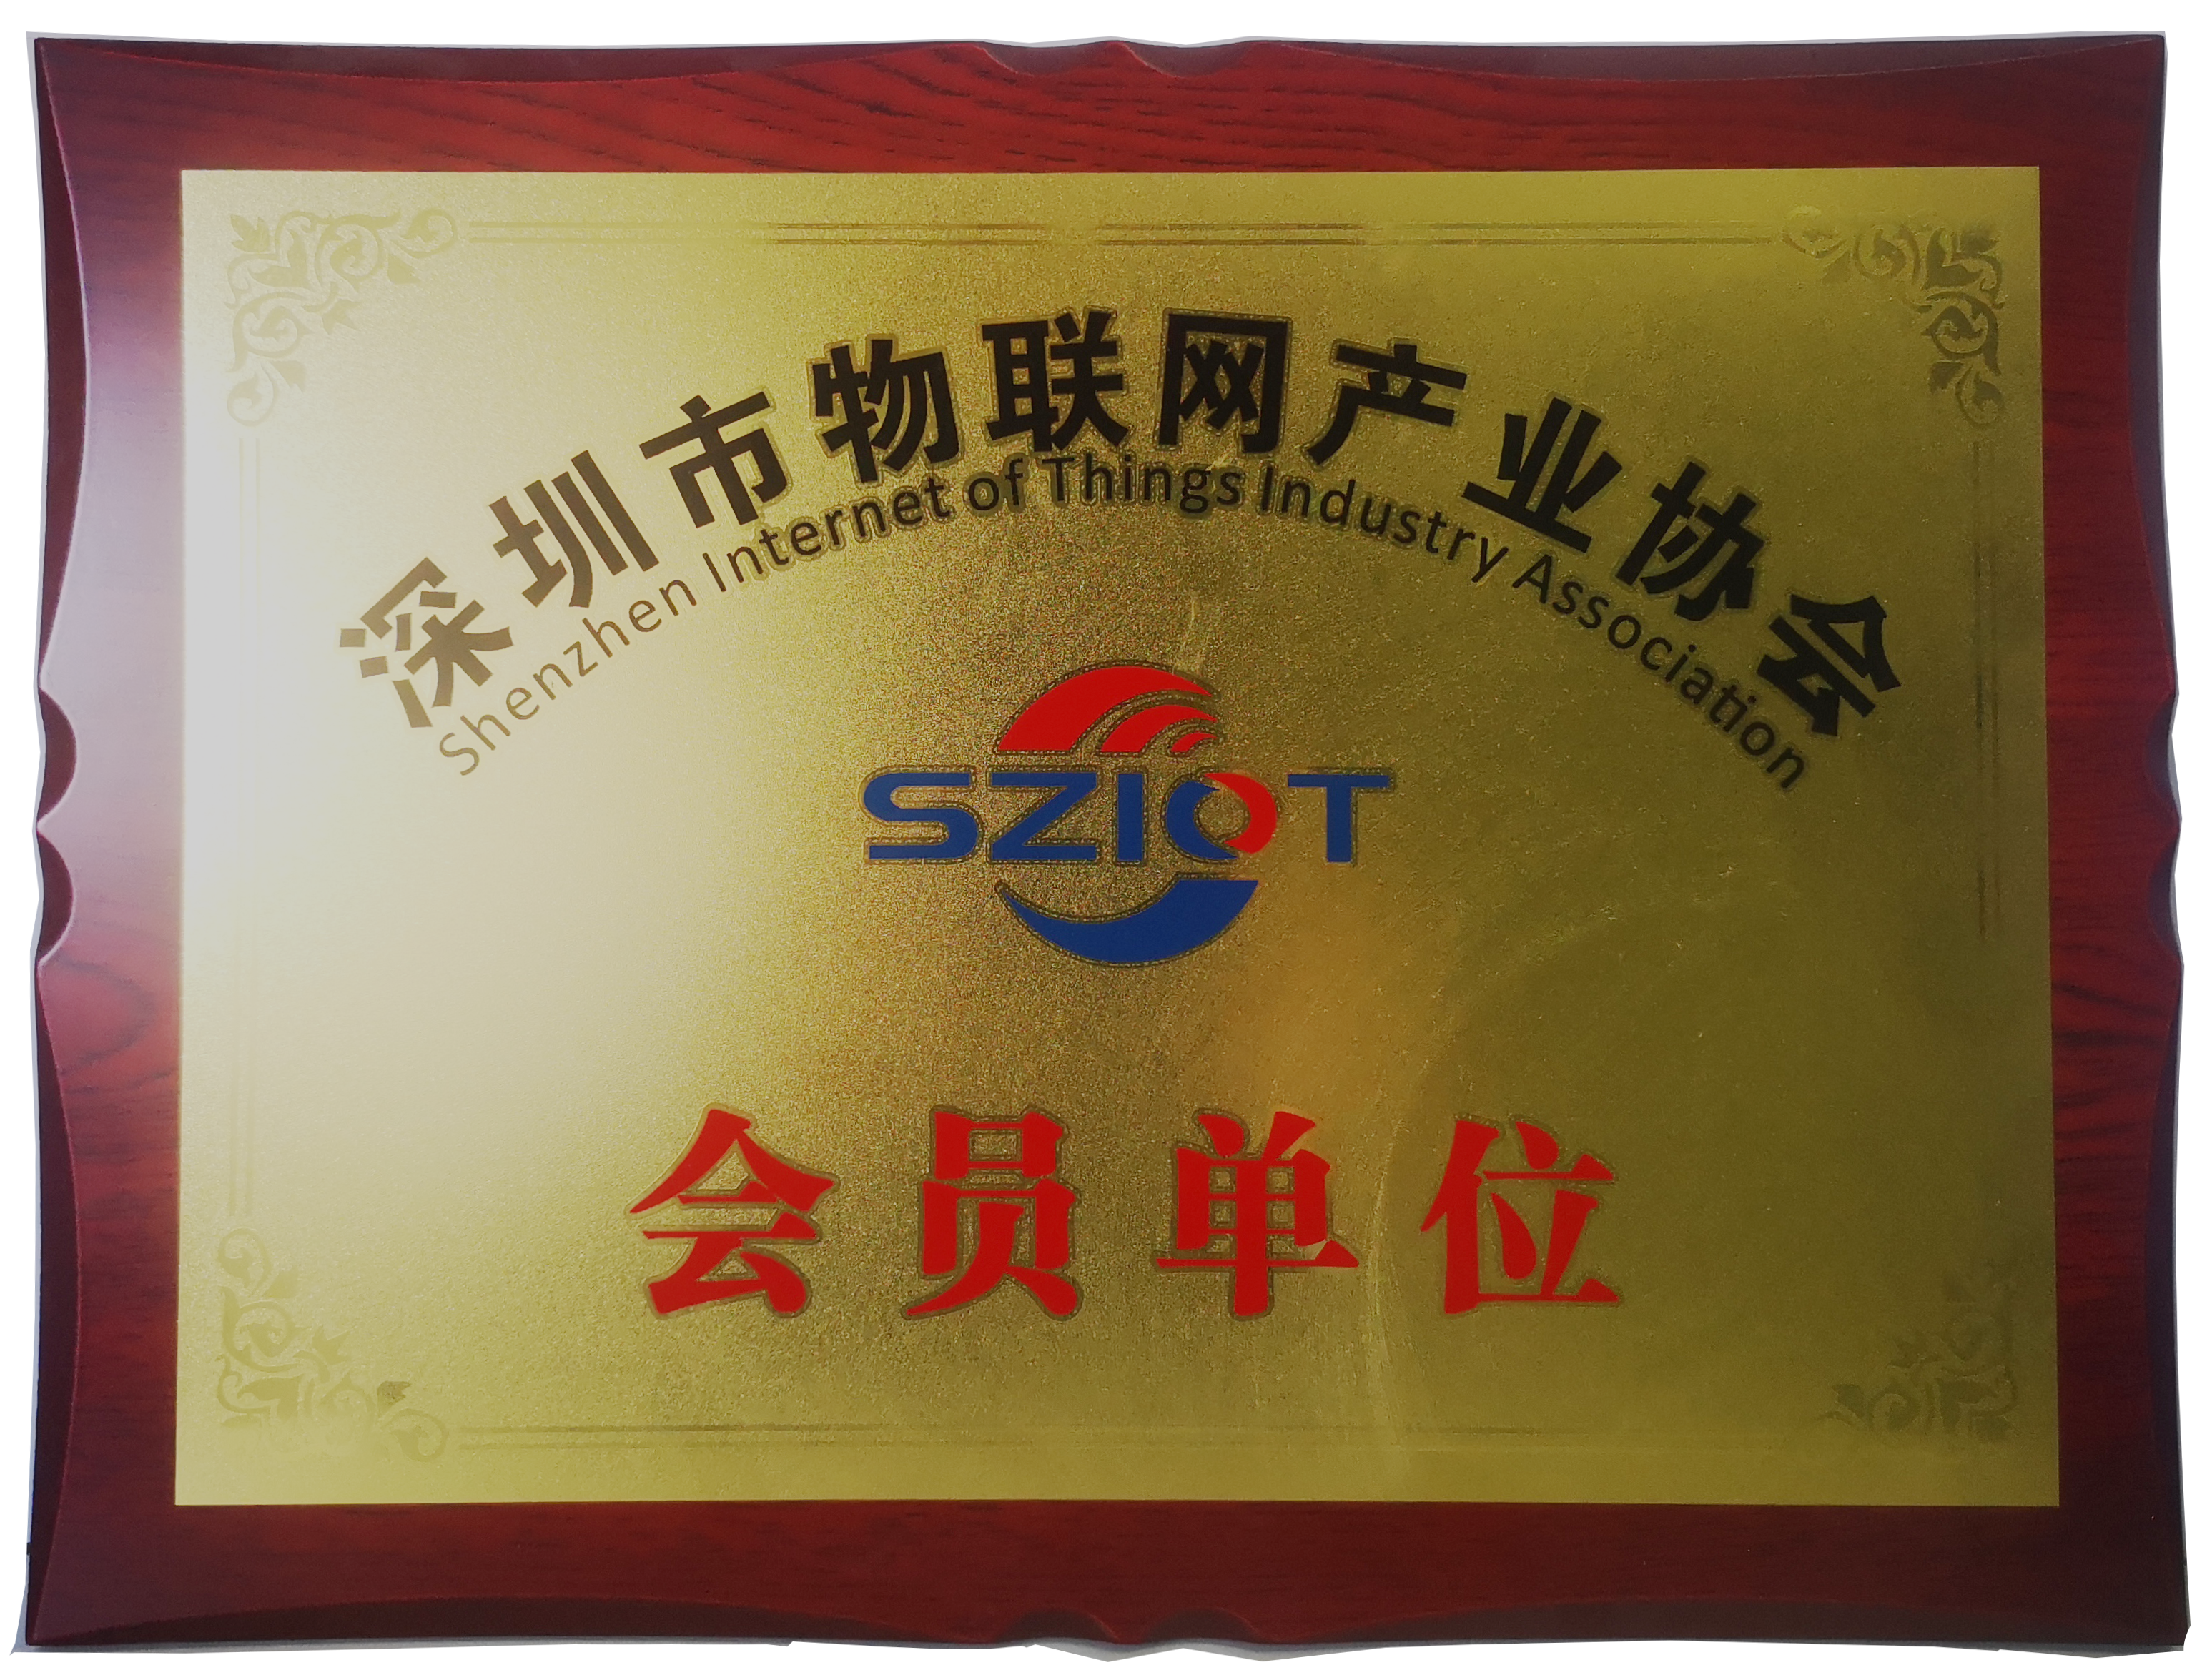 核芯物联是深圳市物联网产业协会会员单位